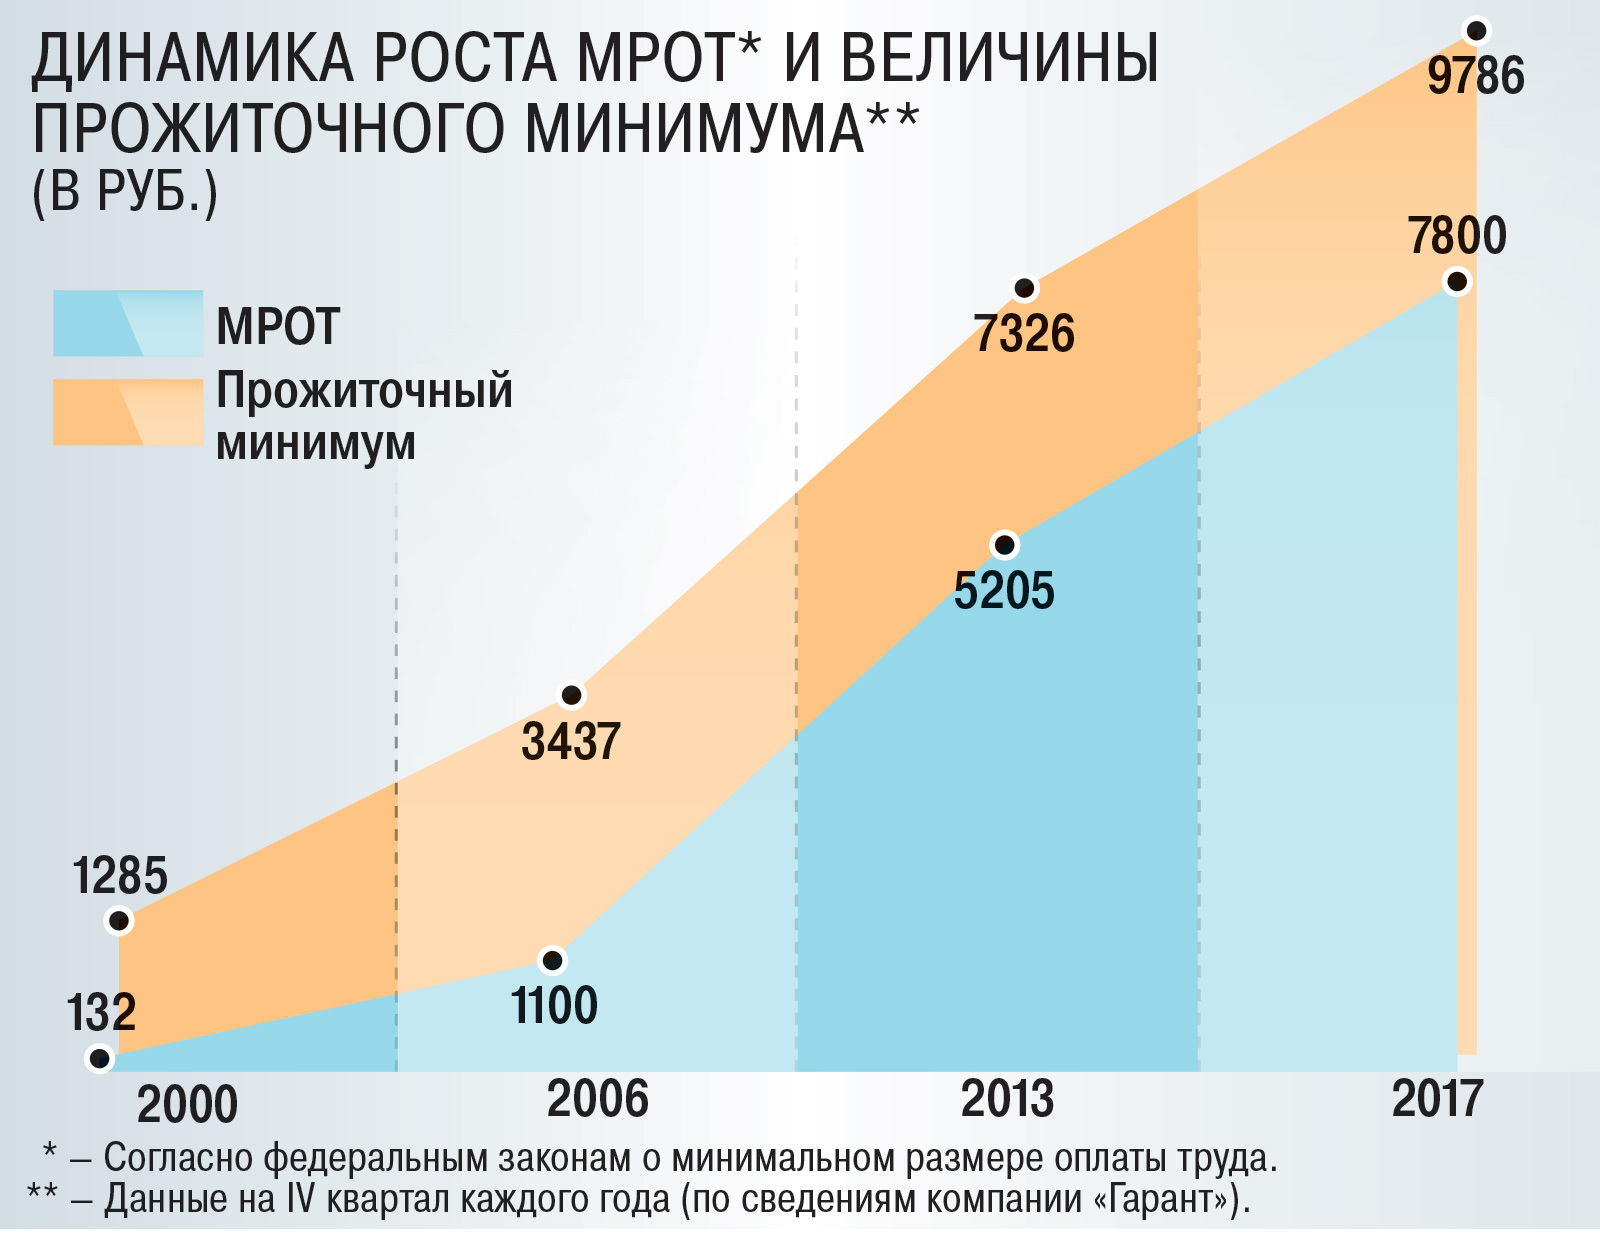 Прожиточных минимумов в субъекте федерации. Рост прожиточного минимума в России. Динамика роста прожиточного минимума. МРОТ. МРОТ динамика по годам.